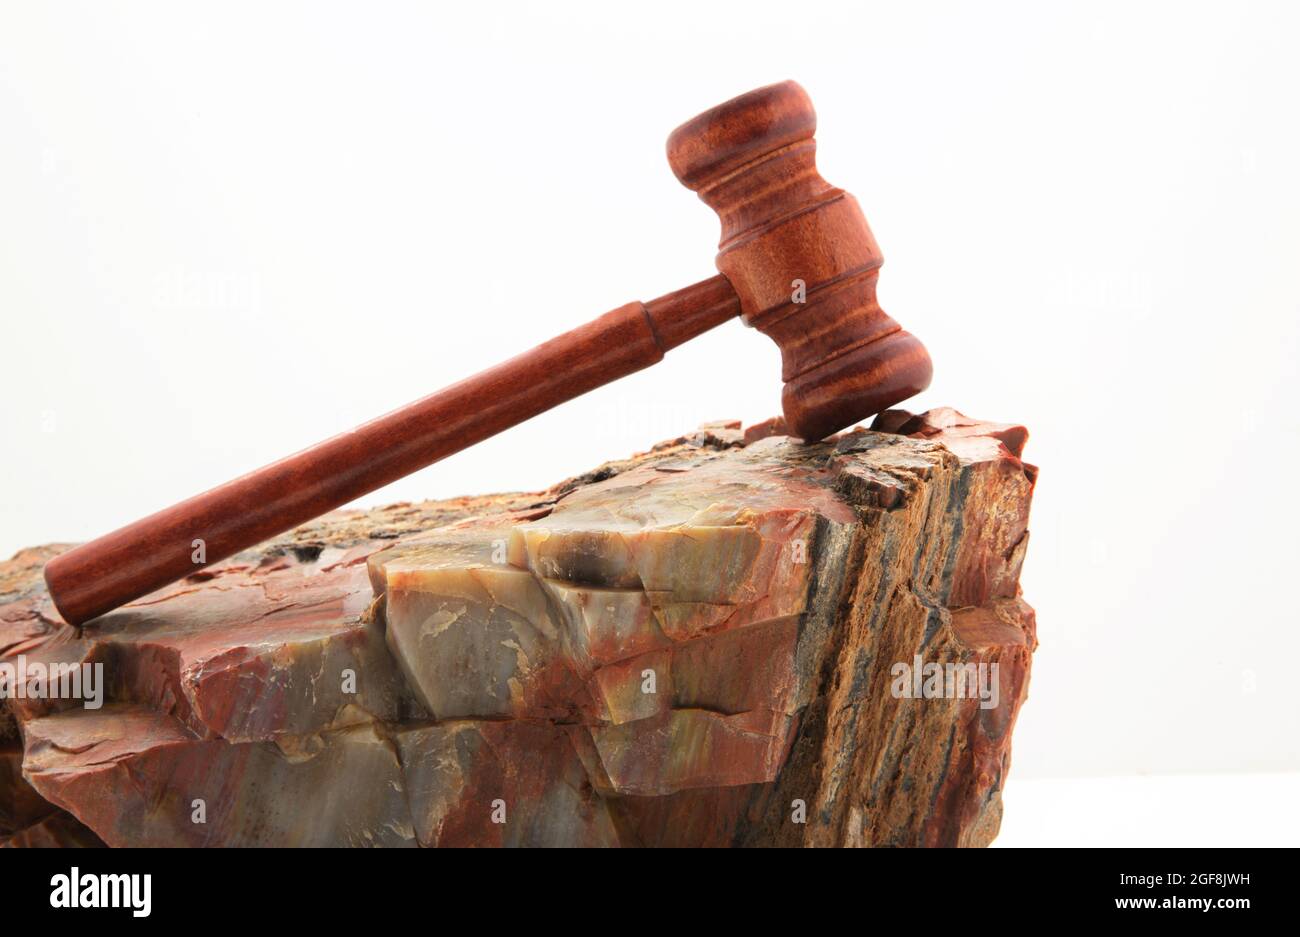 Il gavel posto su roccia di legno pietrificata riflette sia la natura duratura che le dure sfide delle decisioni giudiziarie. Foto Stock